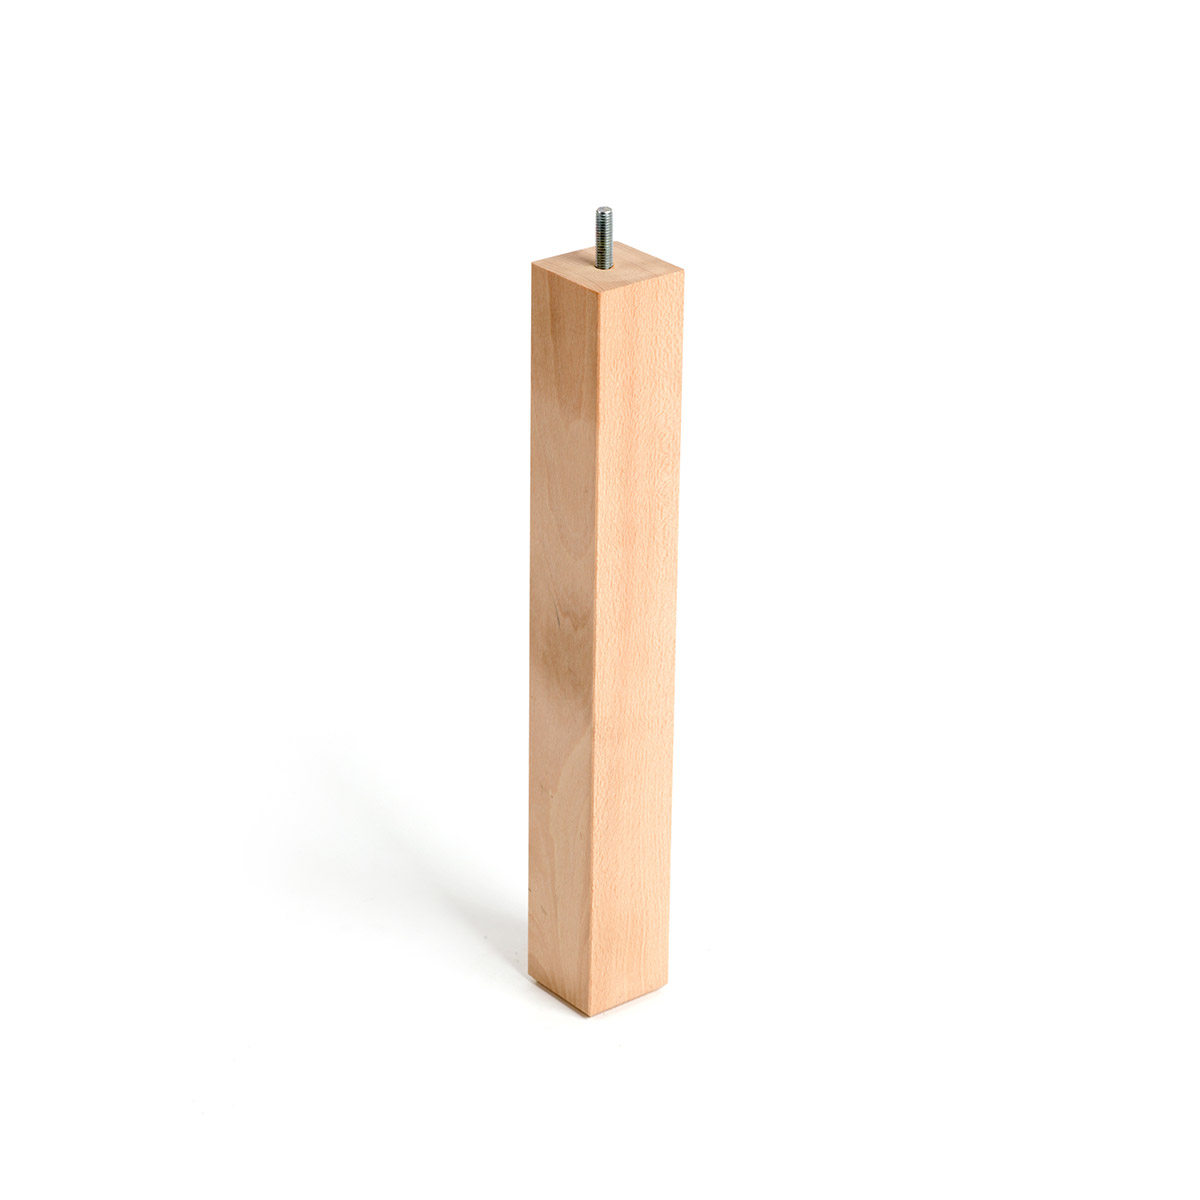 Pata de madera cuadrada con una altura de 360 mm y acabada en haya crudo. Dimensiones: 45x45x360 mm